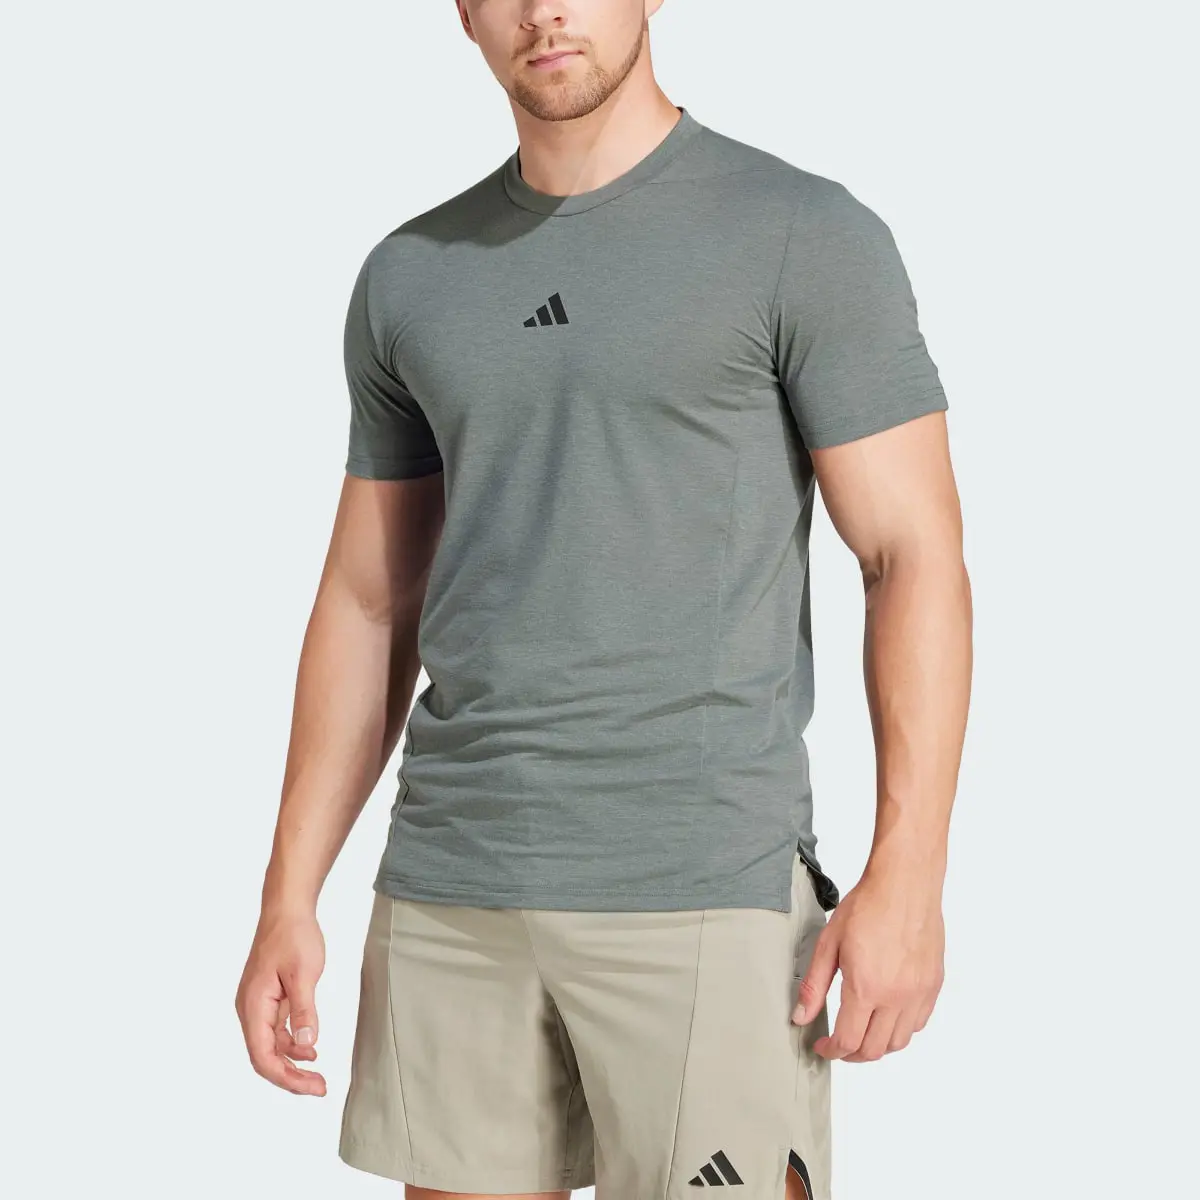 Adidas Designed for Training Antrenman Tişörtü. 1